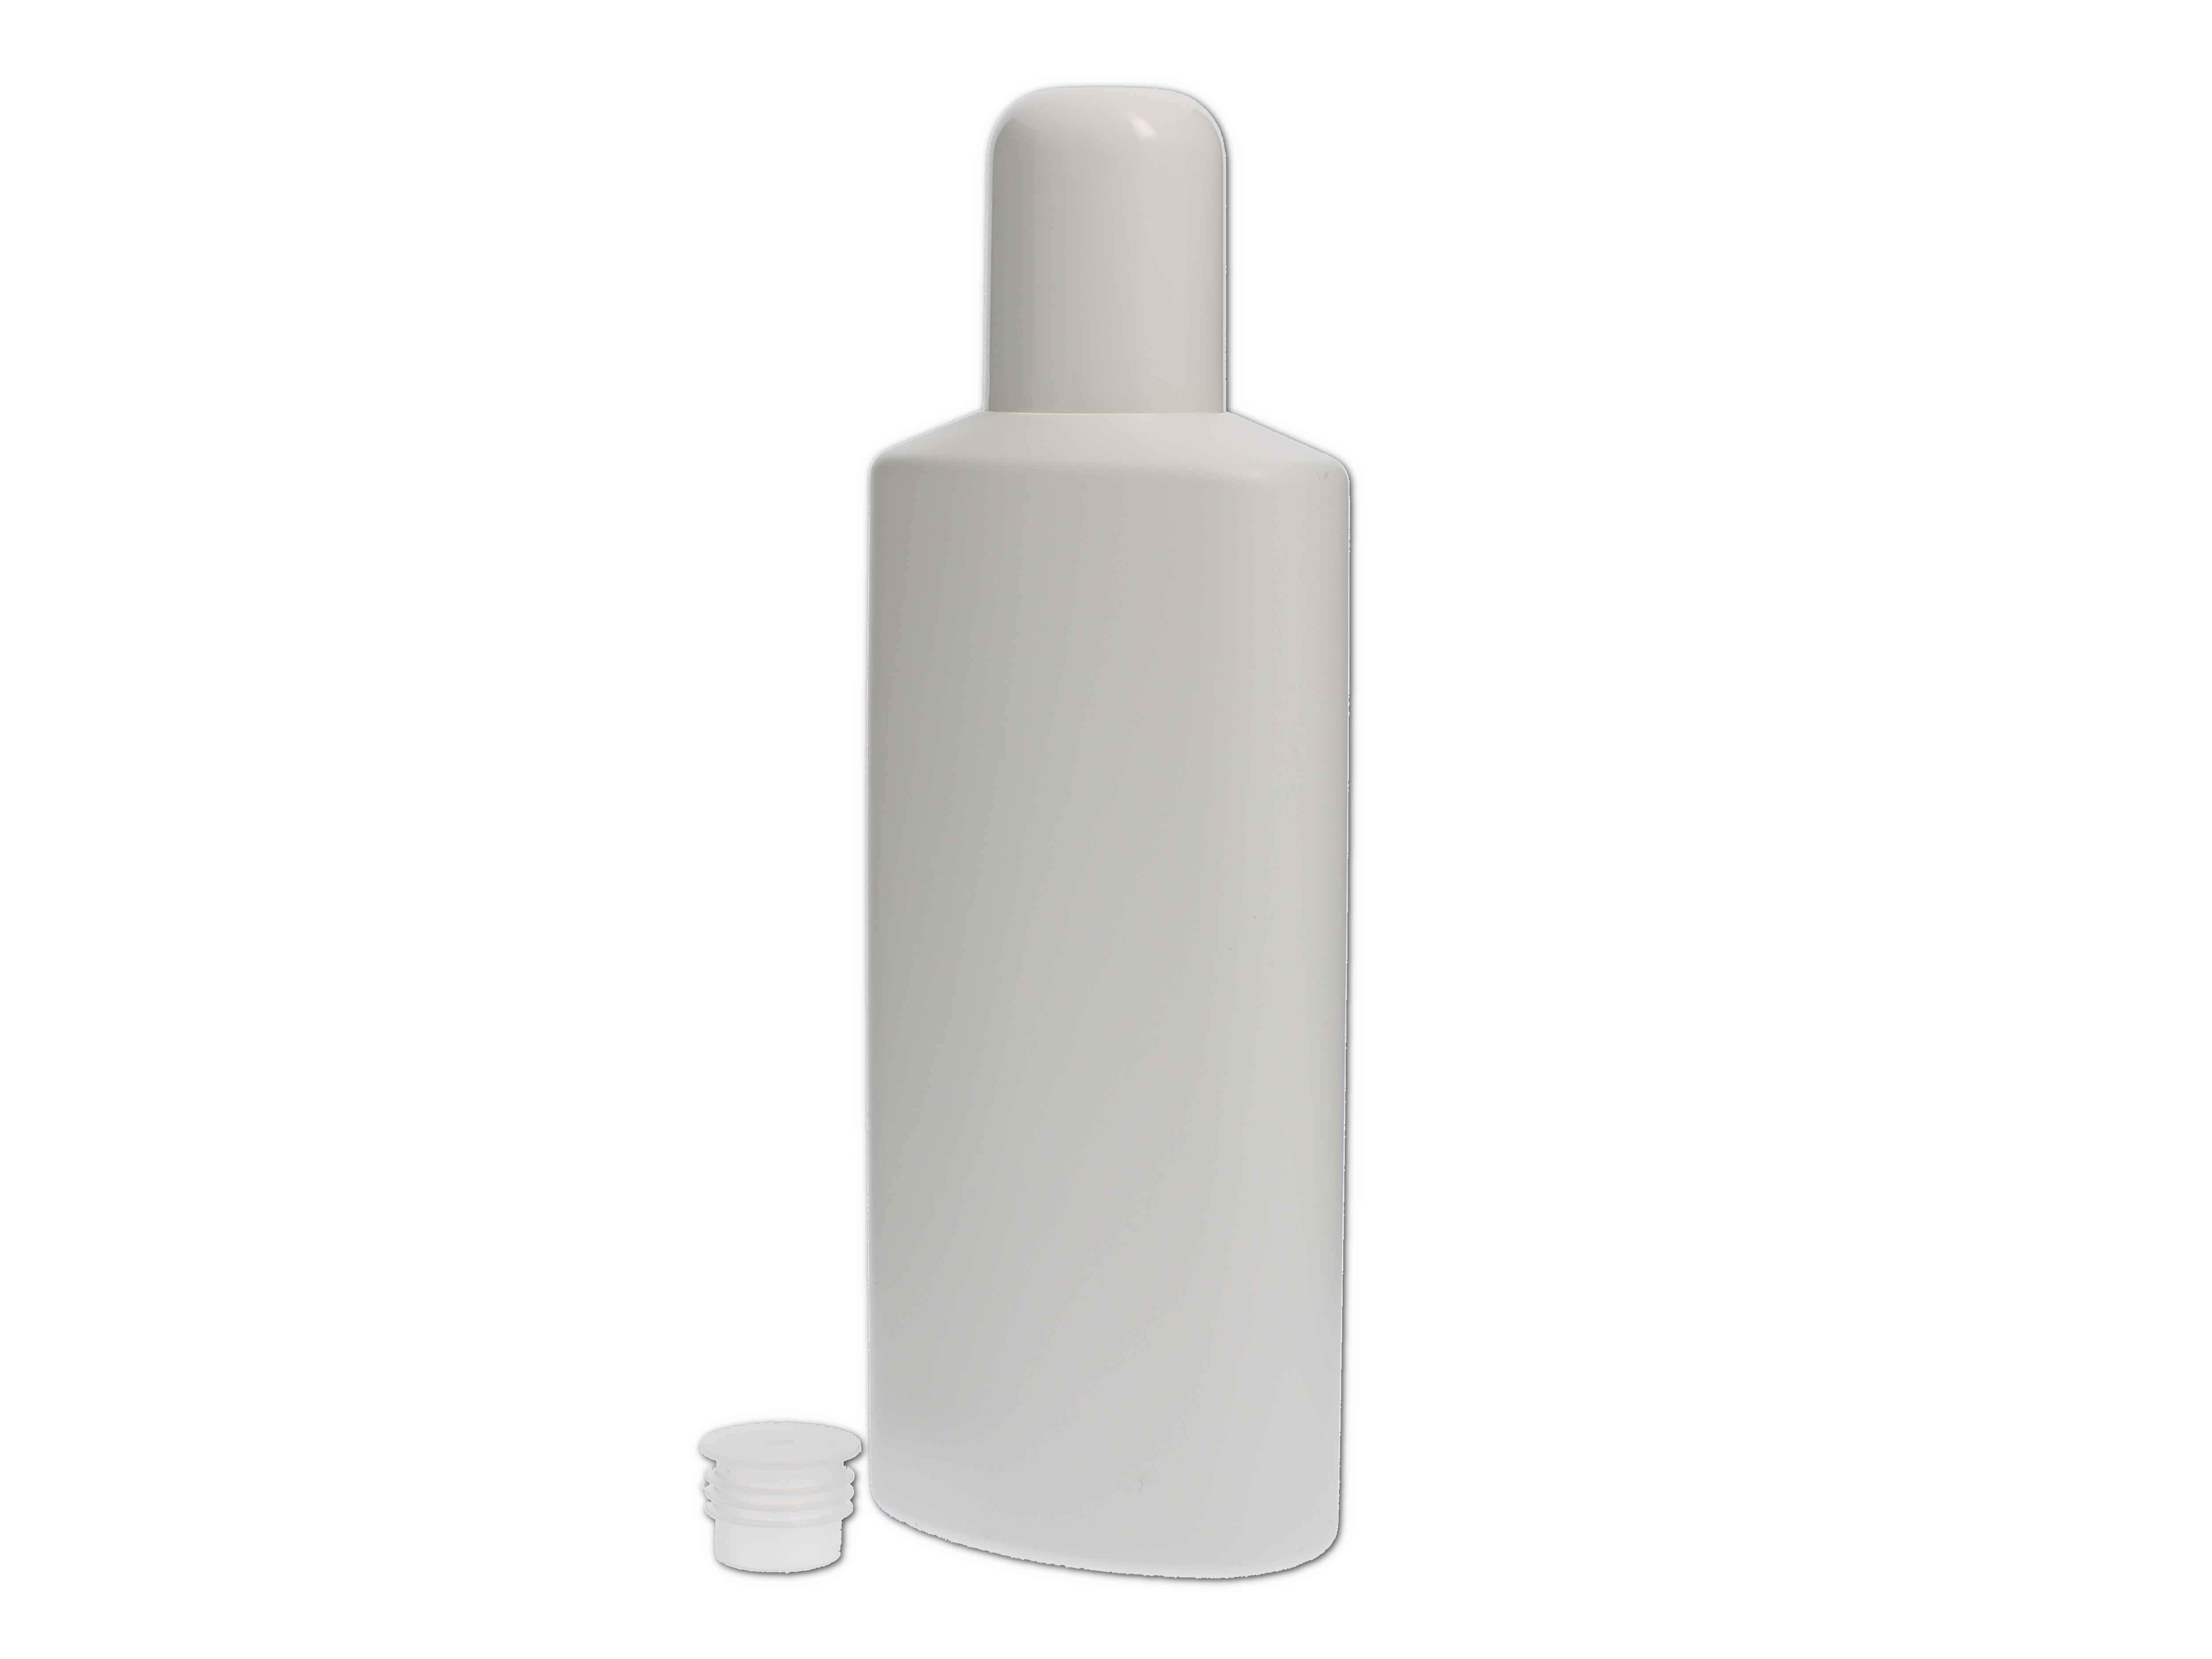    Kosmetikflasche, Kunststoff weiß, oval mit Spritzeinsatz 250ml